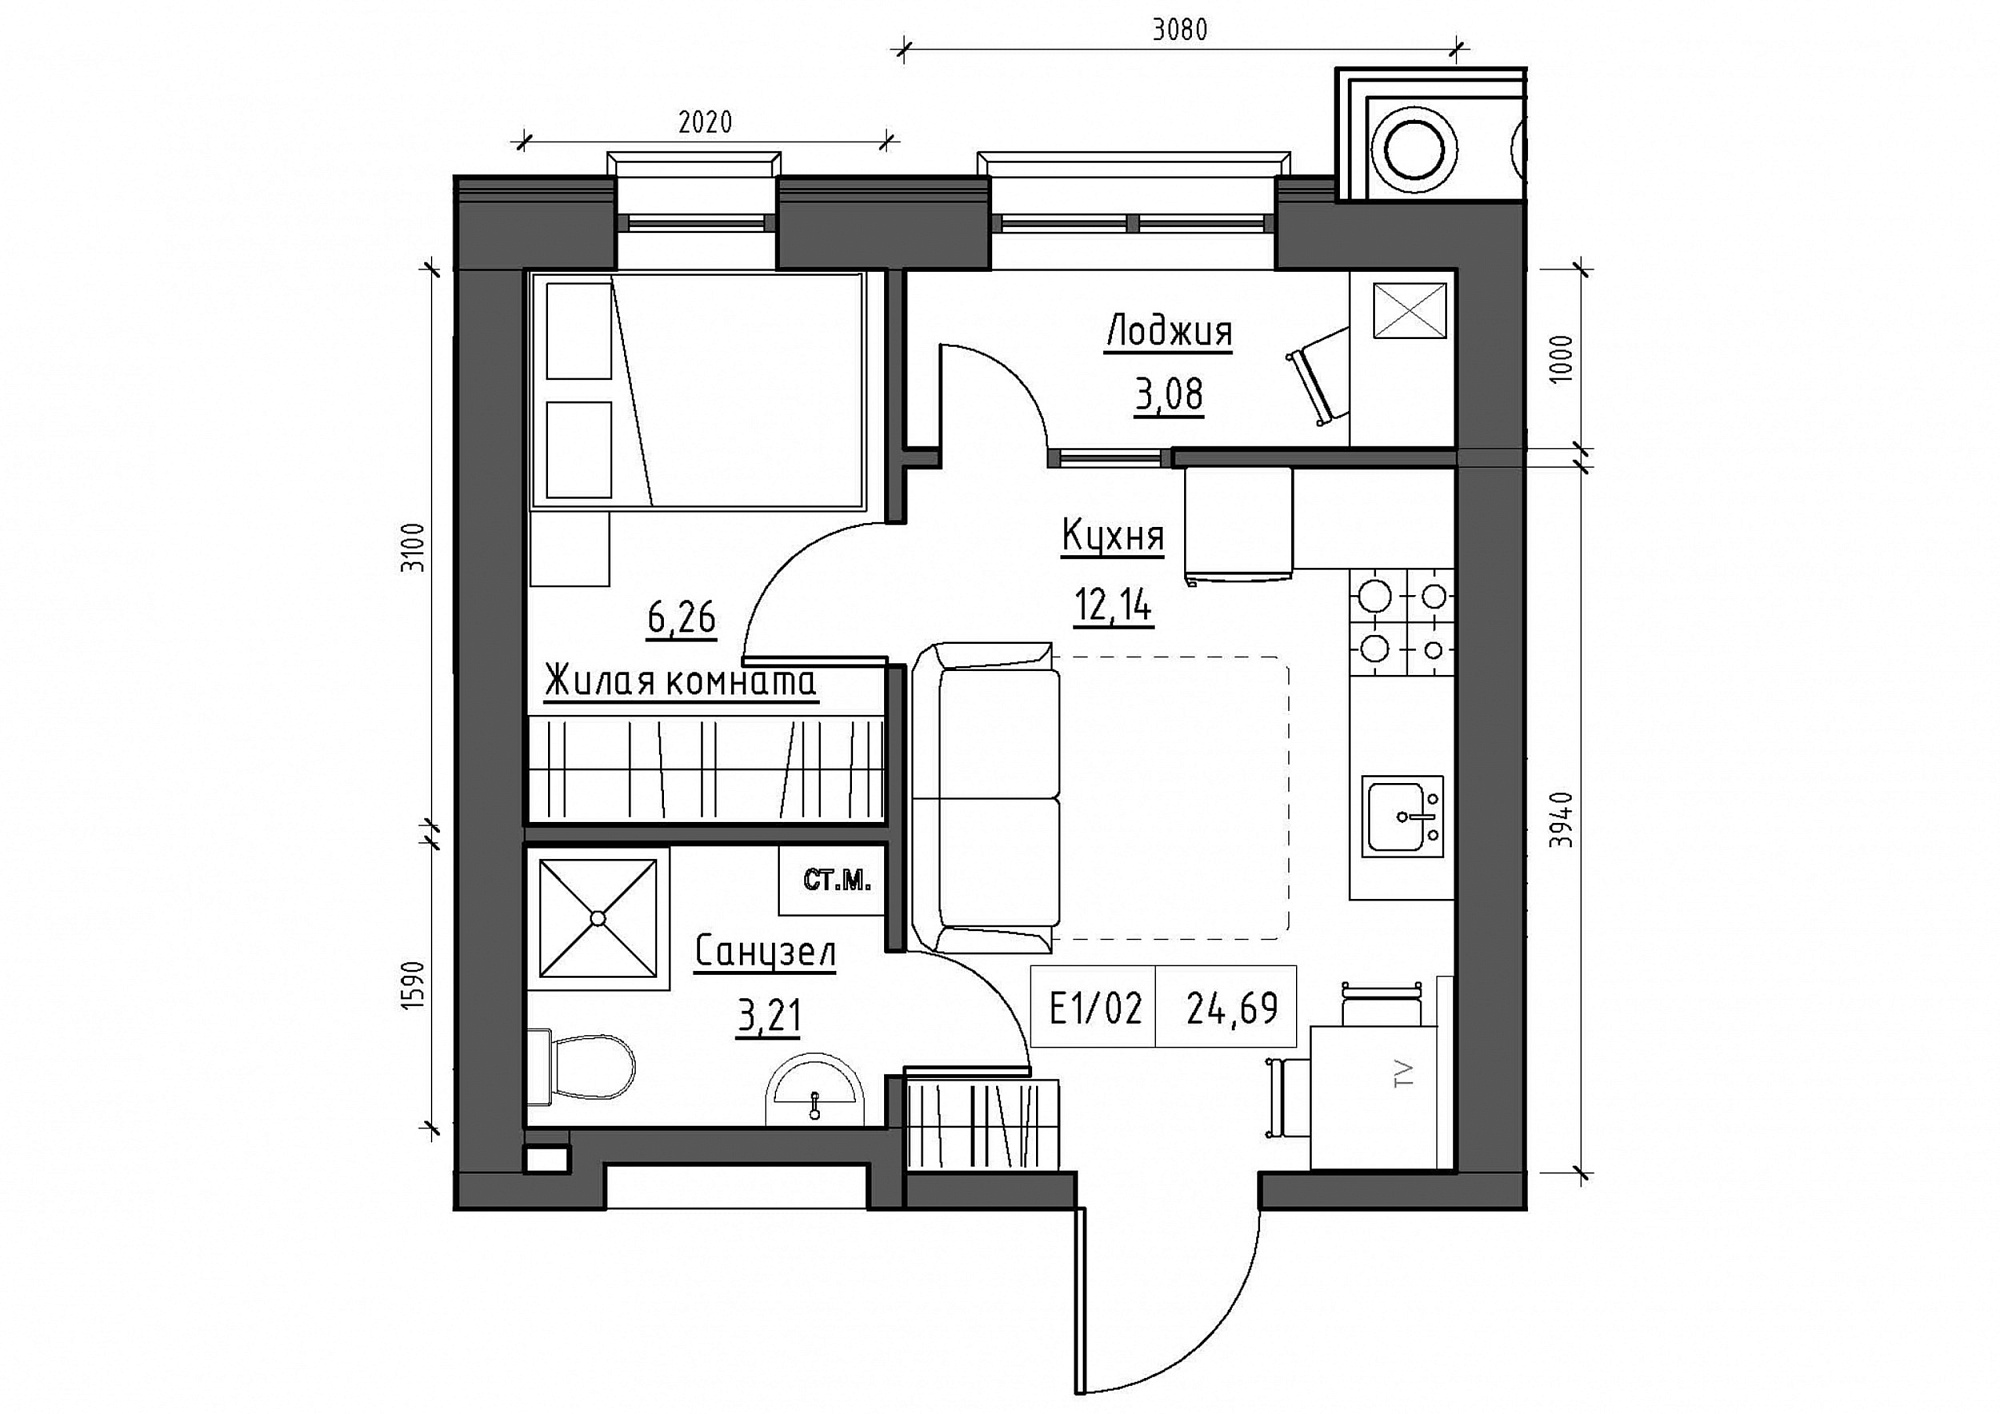 Планировка 1-к квартира площей 24.69м2, KS-011-03/0014.